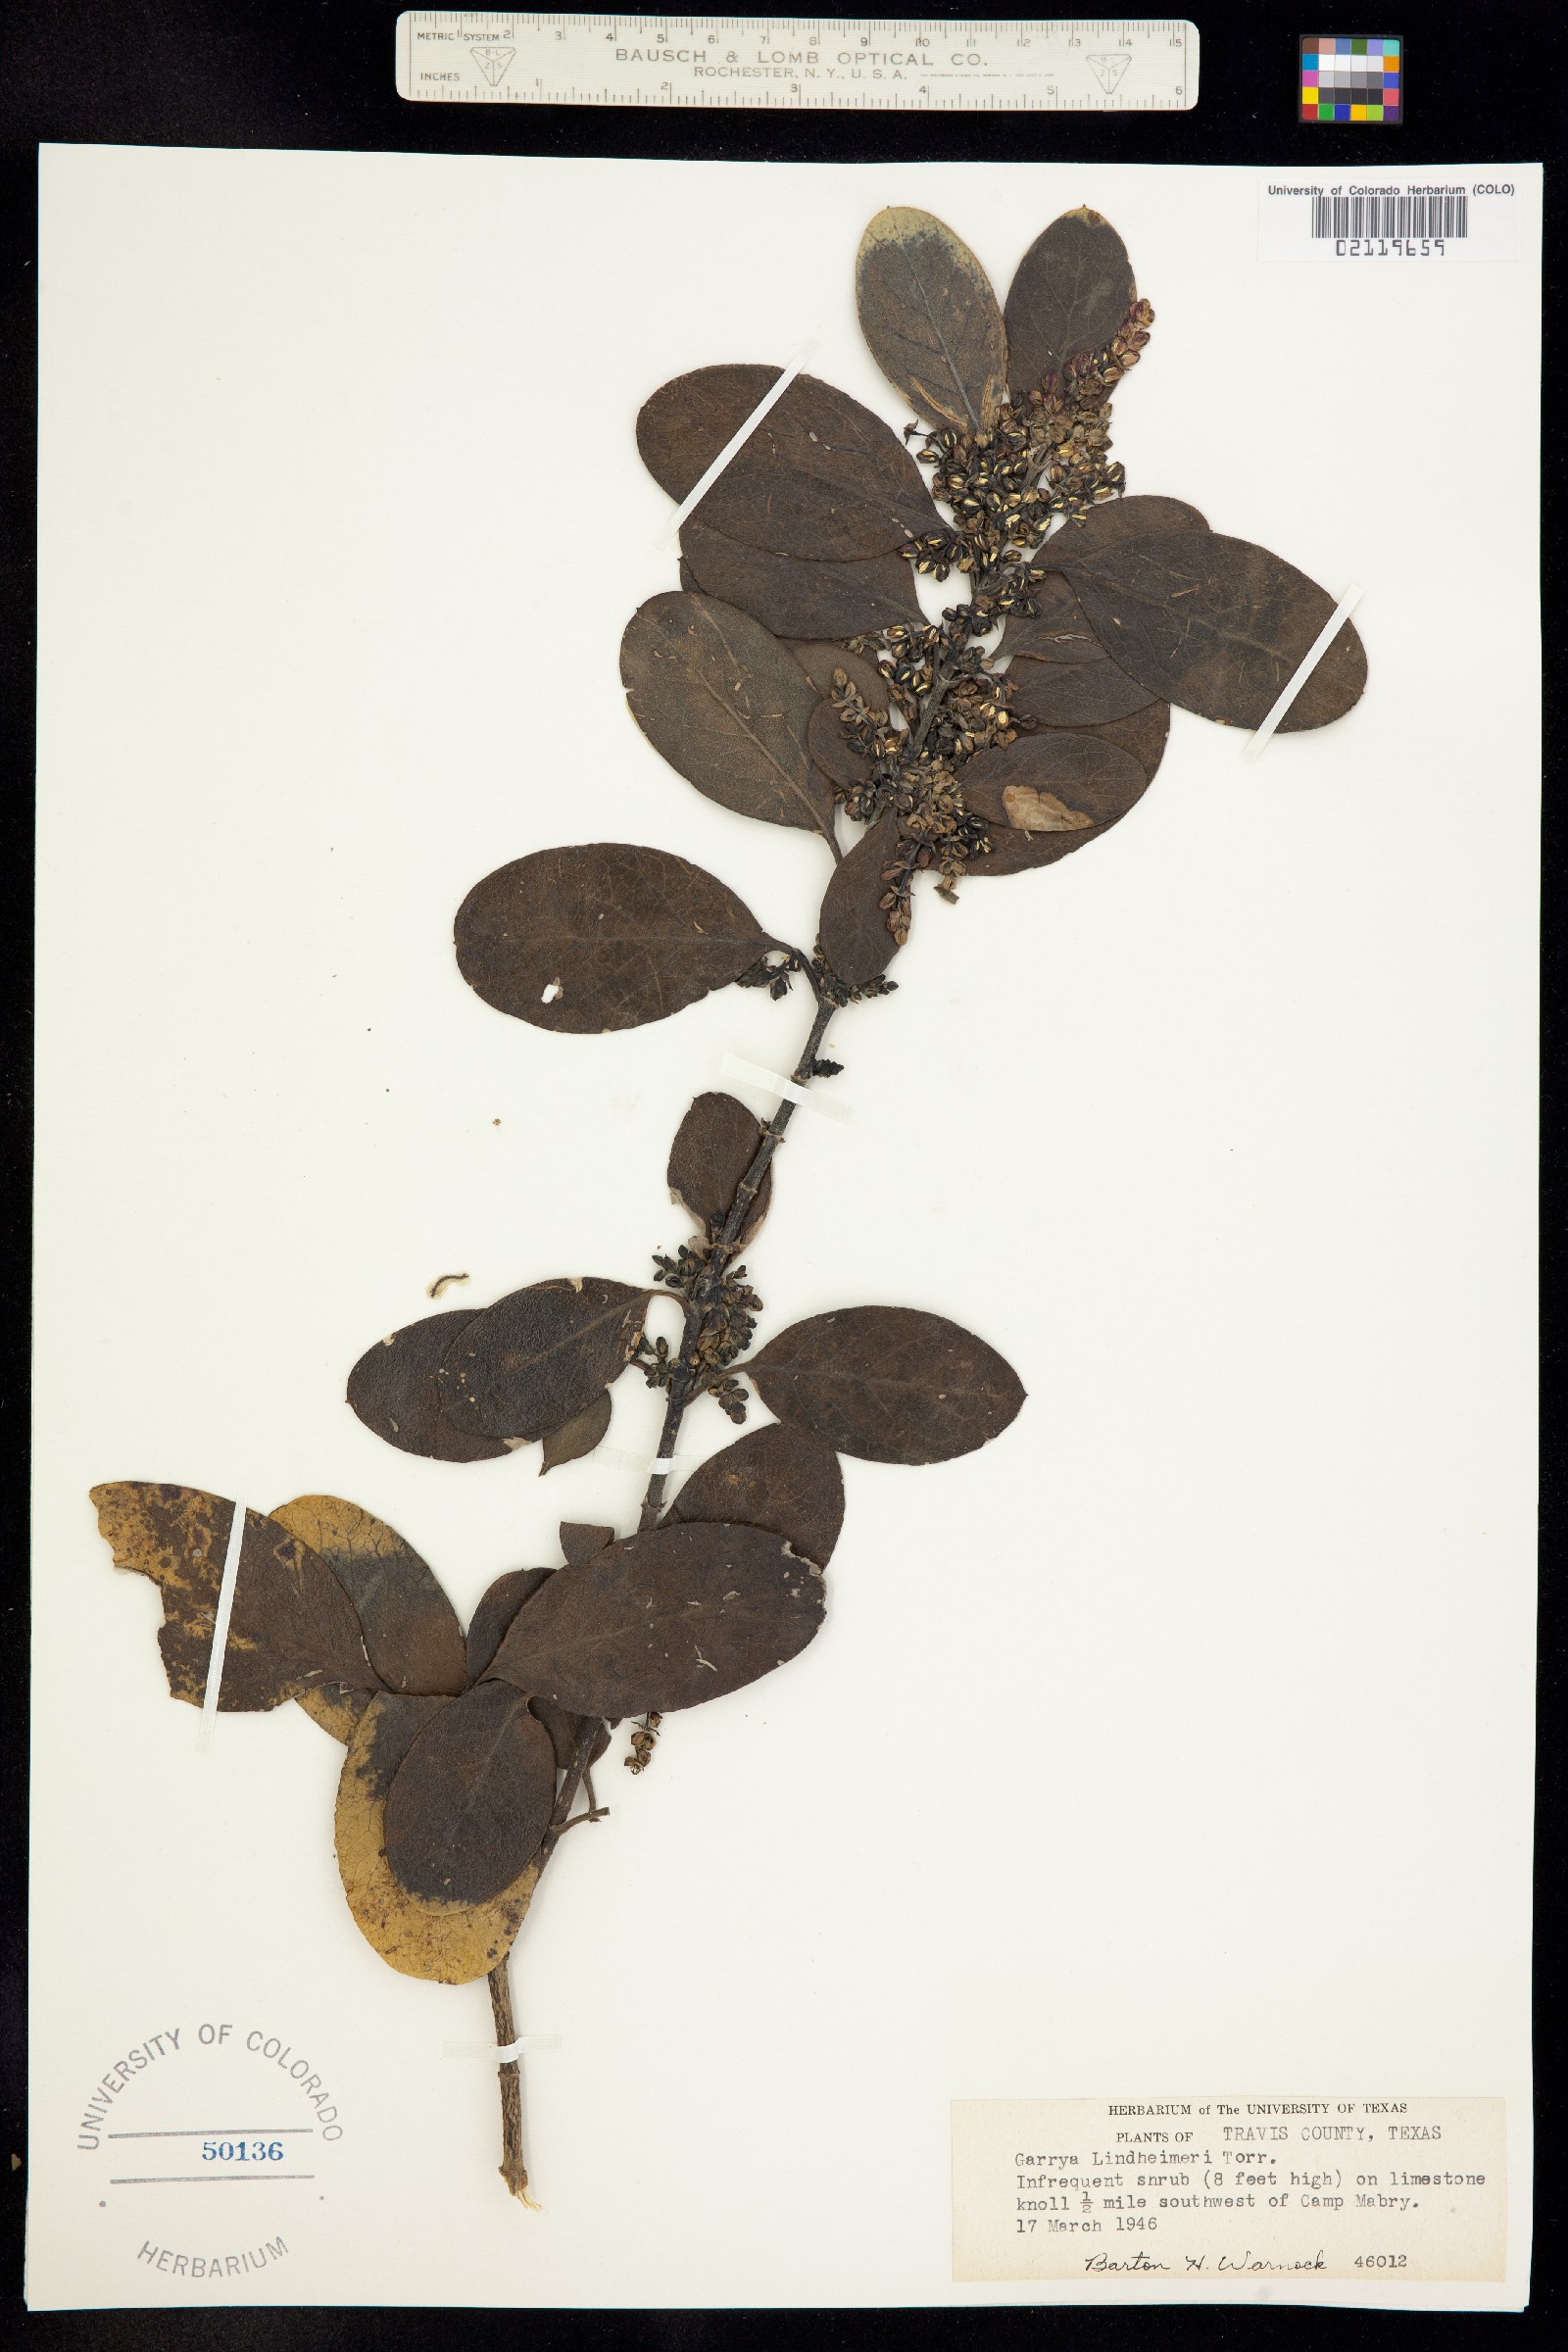 Garrya ovata ssp. lindheimeri image